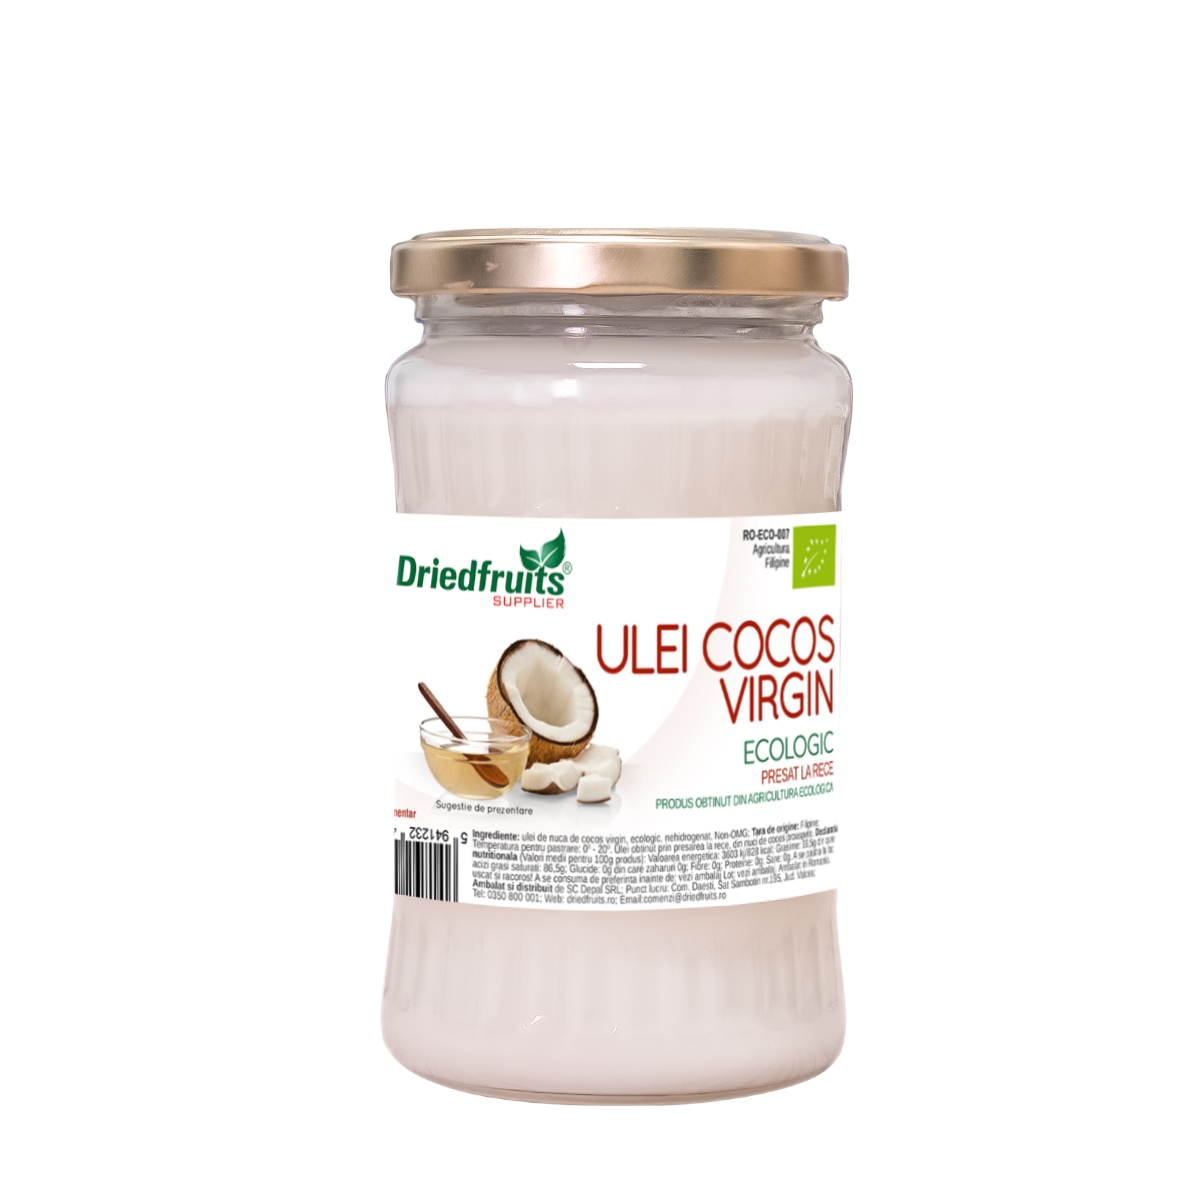 Ulei cocos virgin BIO (presat la rece) Driedfruits – 370 ml/300 g